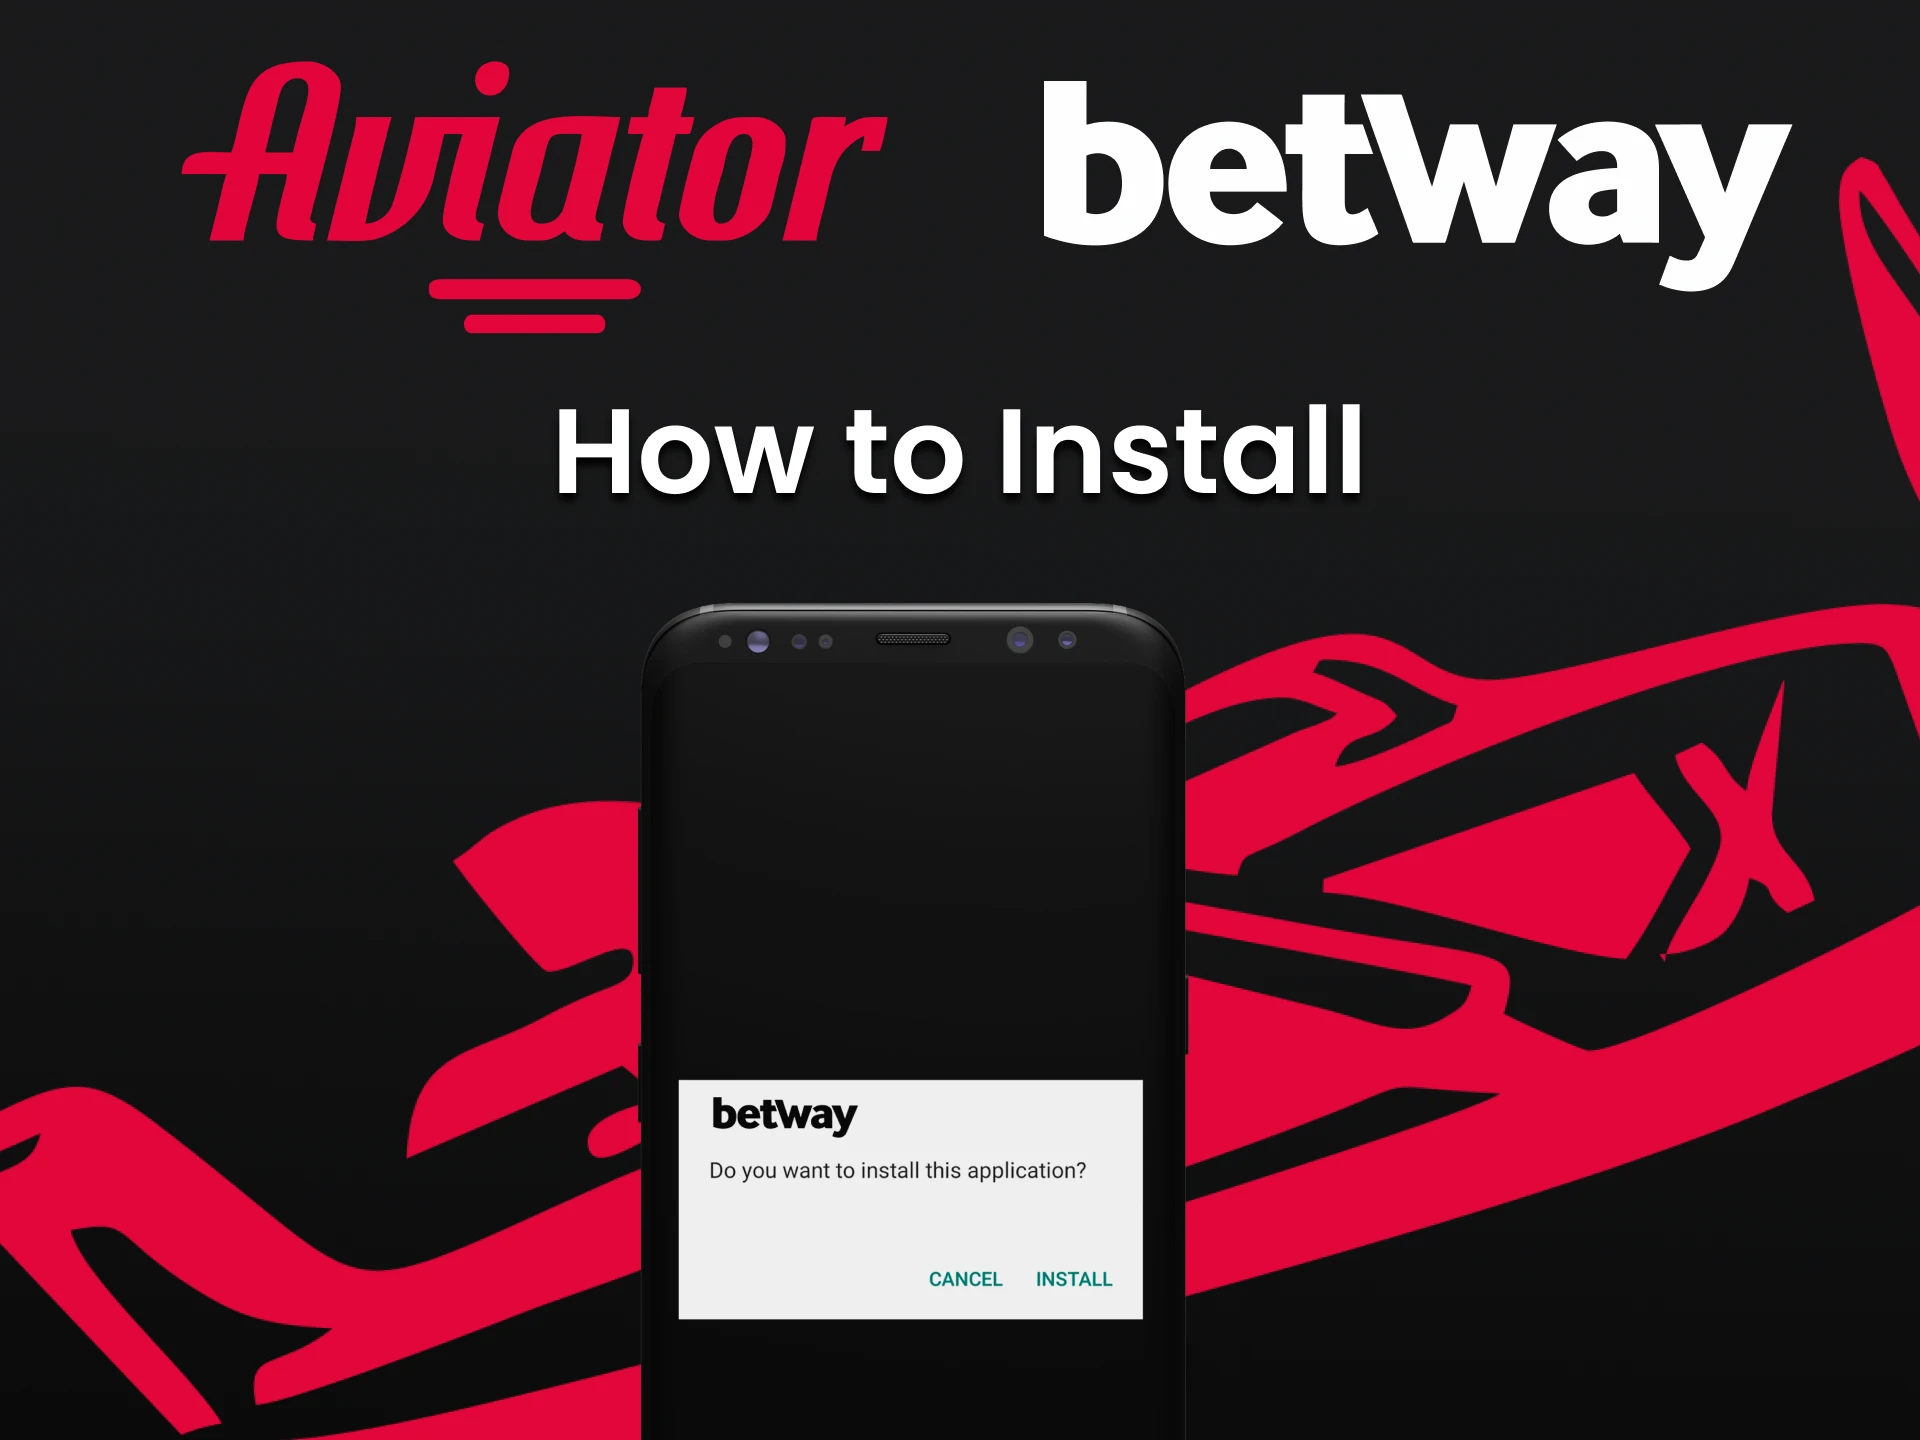 Instalar a aplicação da Betway para jogar Aviator.